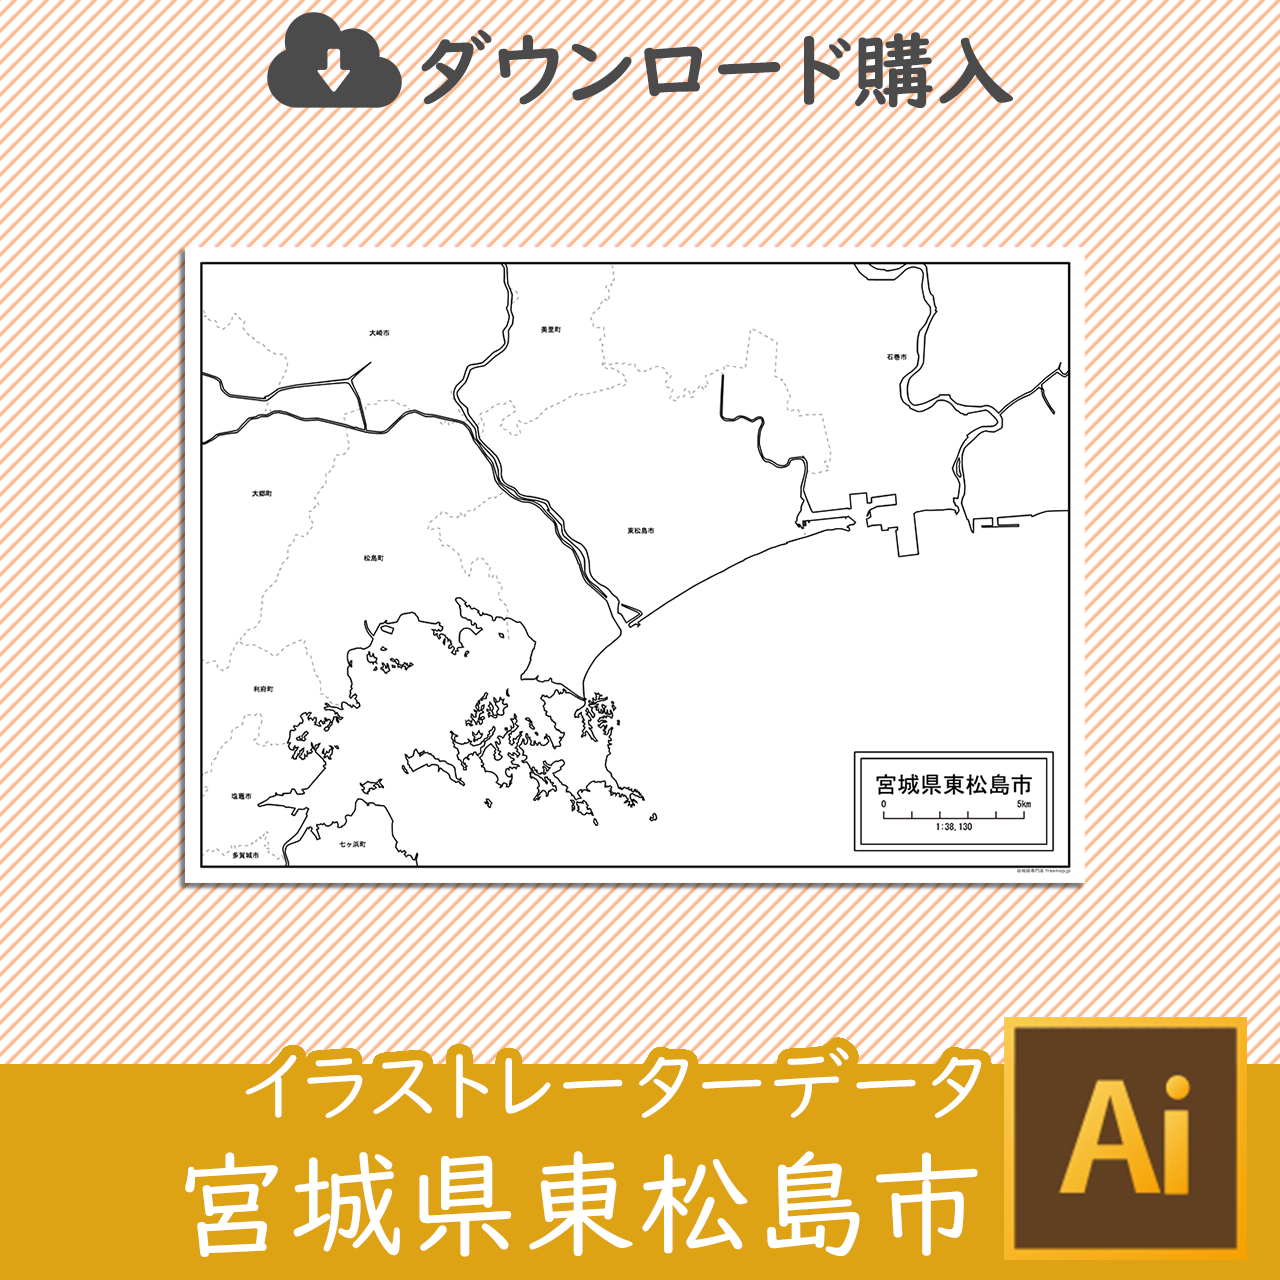 東松島市のaiデータのサムネイル画像